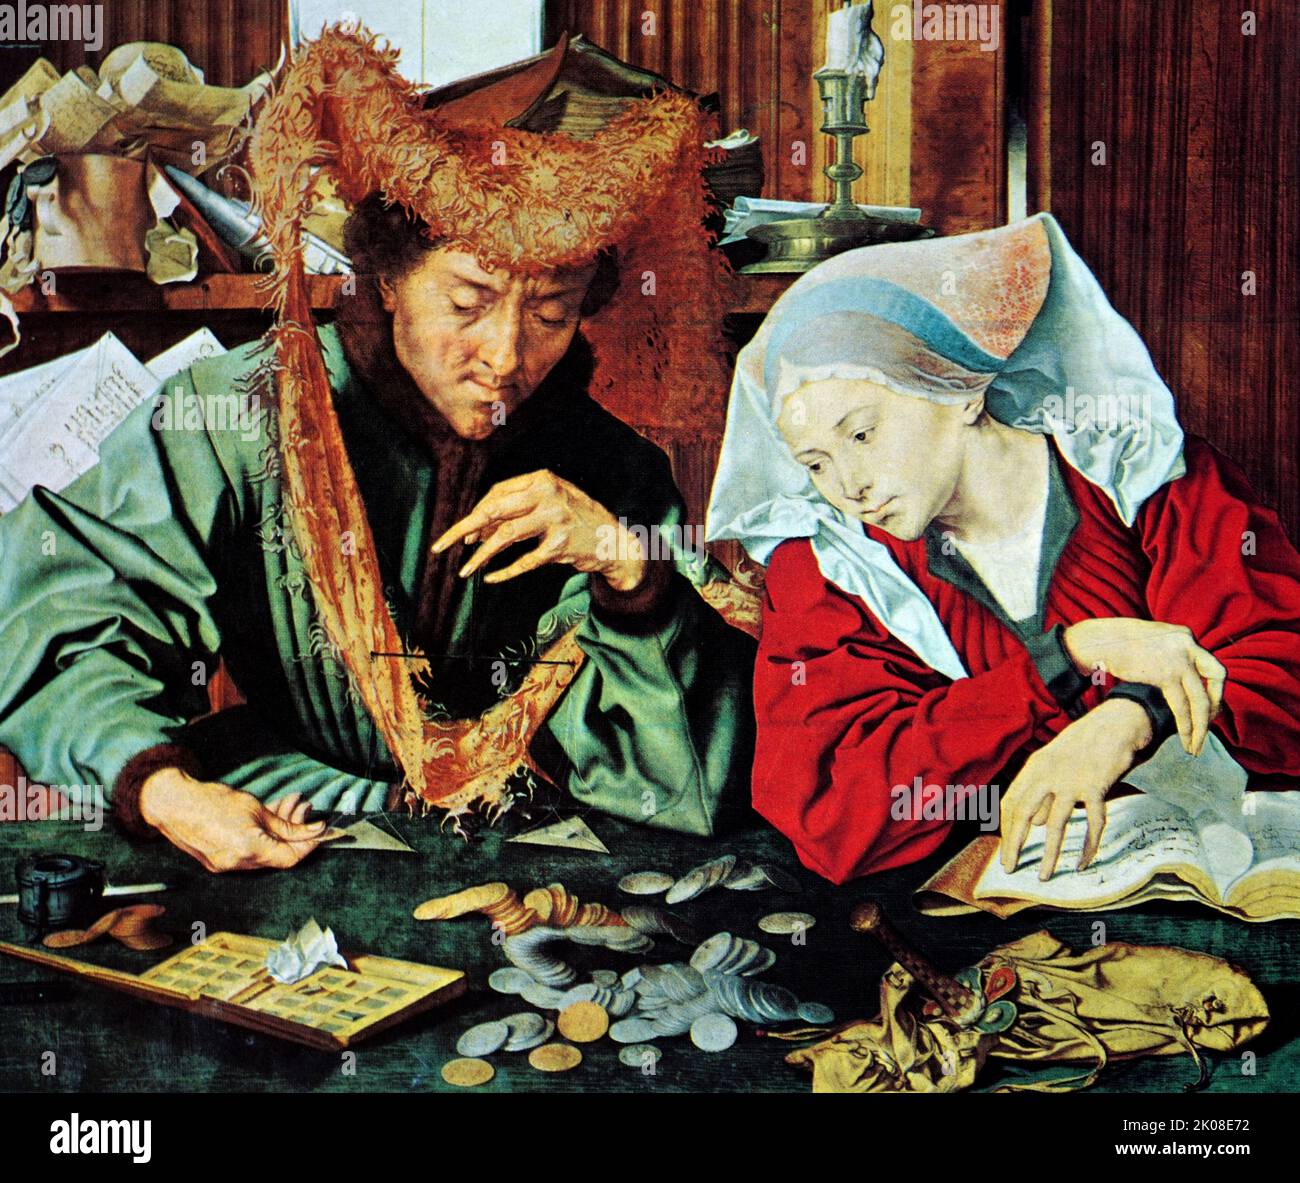 Reicher Geldwechsler und seine Frau im Mittelalter, gemalt von Marinus van Reymerswaele oder Marinus van Reymerswale (c.1490 - c.. 1546) war ein niederländischer Renaissance-Maler, der vor allem für seine Genreszenen und religiösen Kompositionen bekannt war Stockfoto